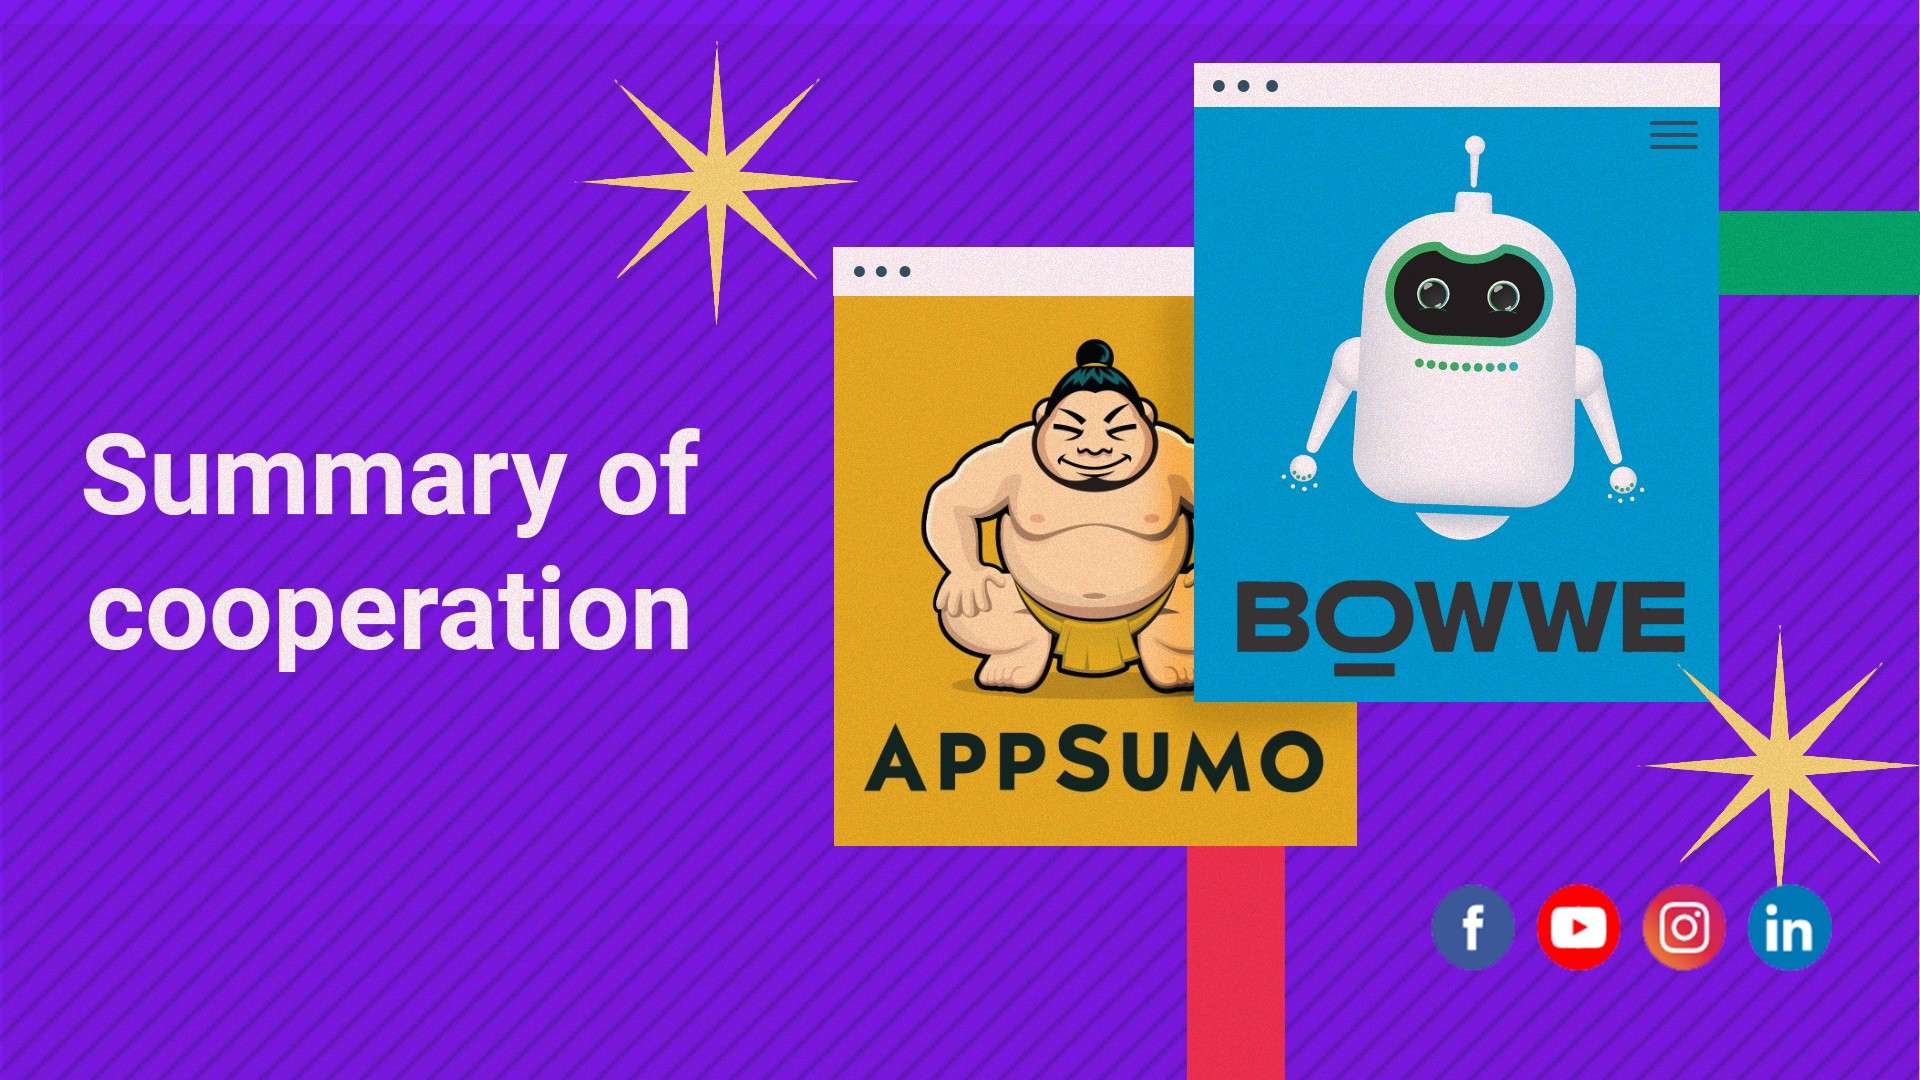 ¿Cómo se convirtió BOWWE en el mejor creador de Appsumo?